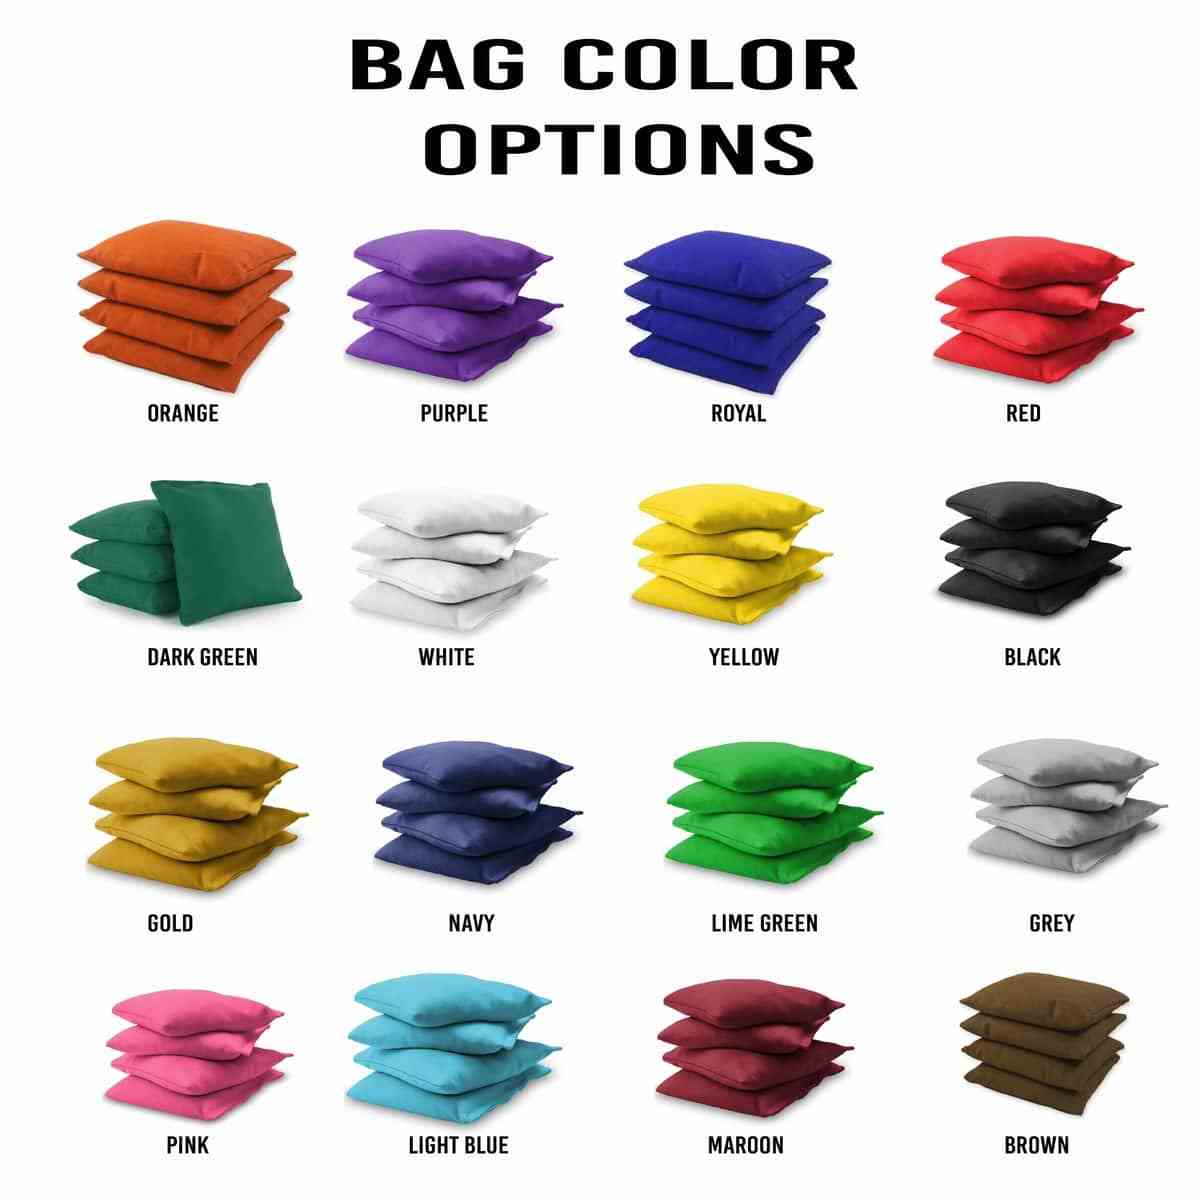 Arrow 2x4 bag colors